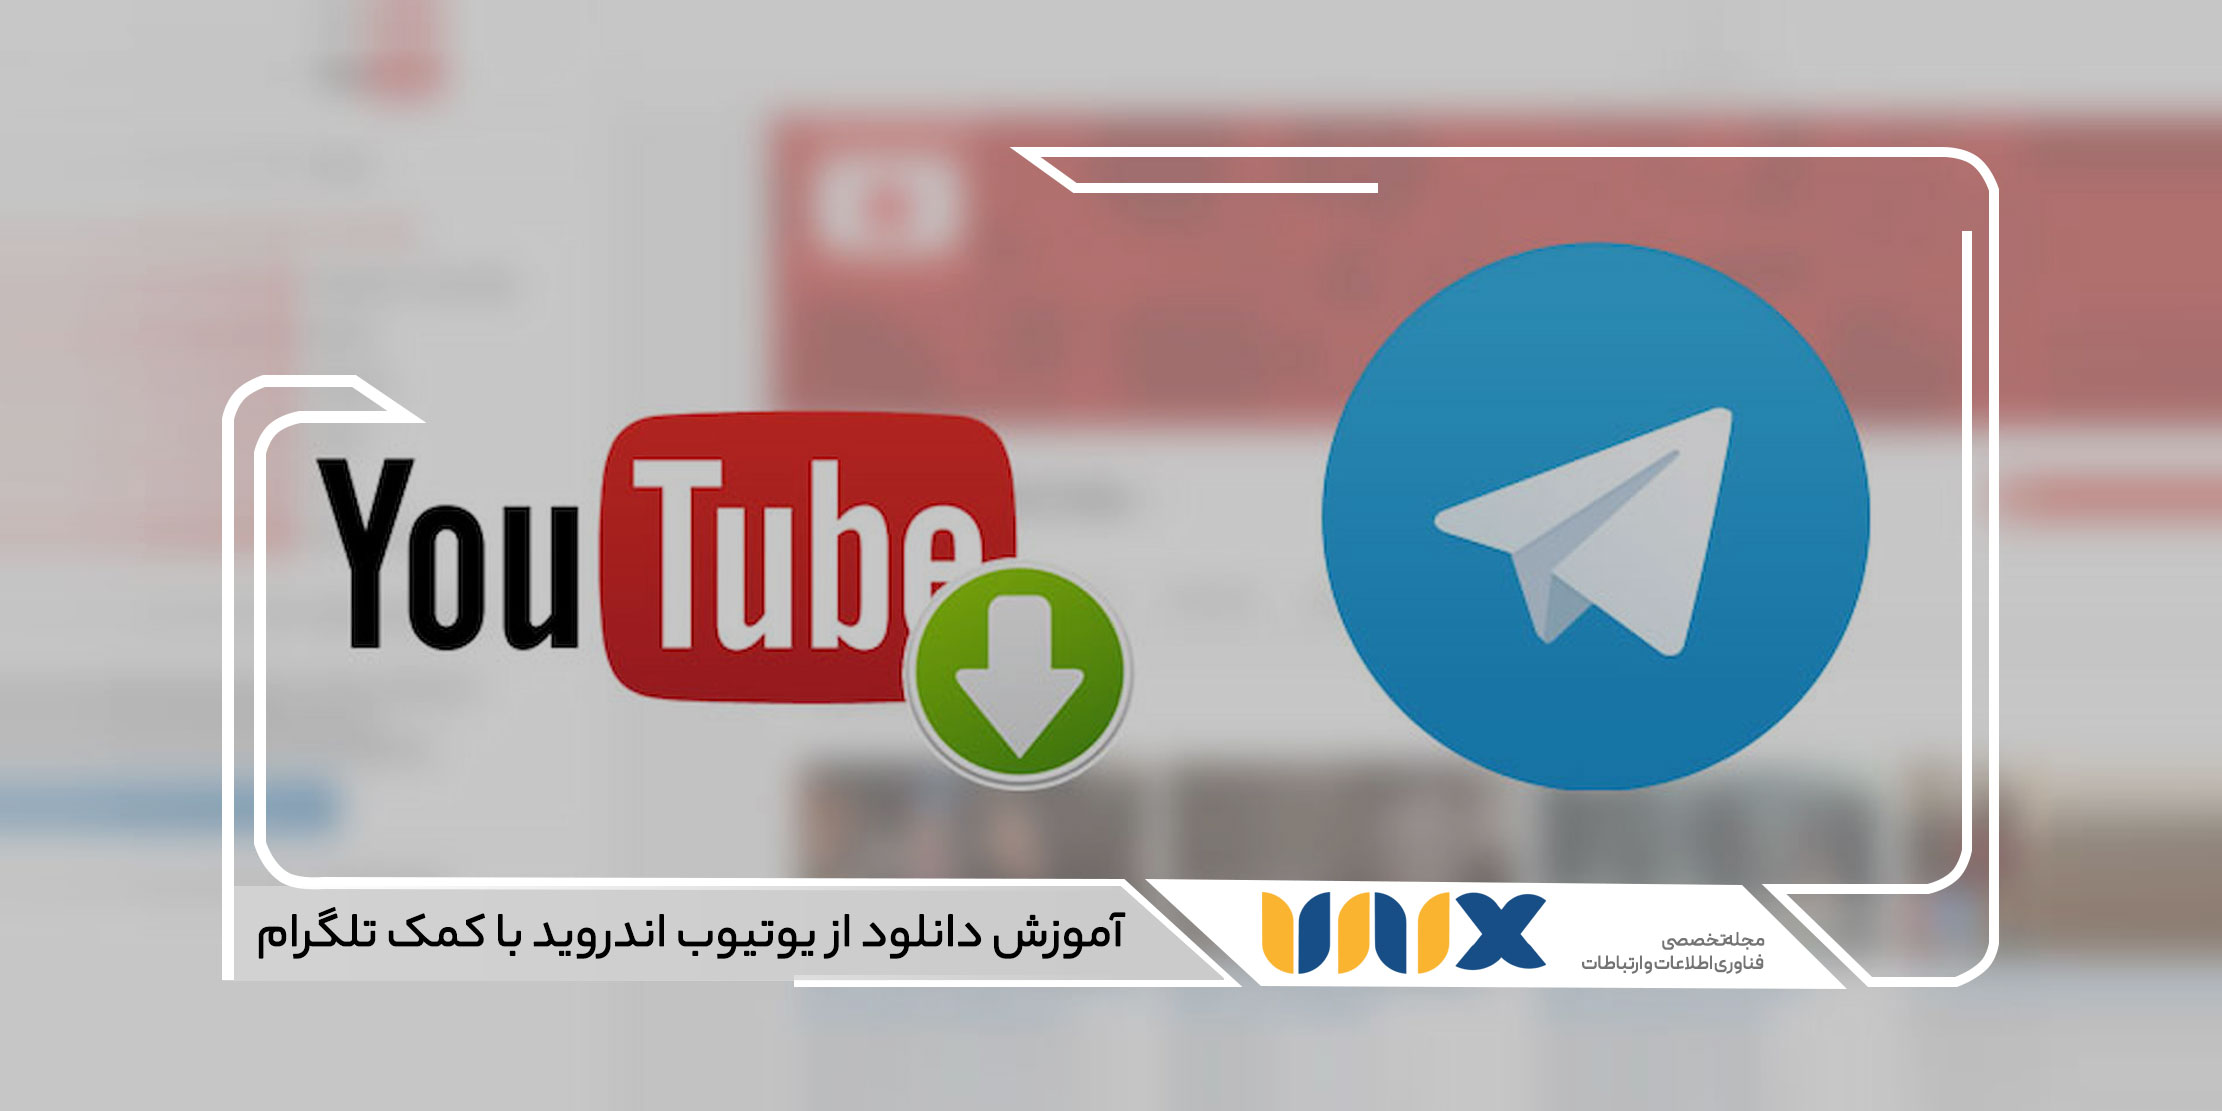 آموزش دانلود از یوتیوب اندروید با کمک تلگرام